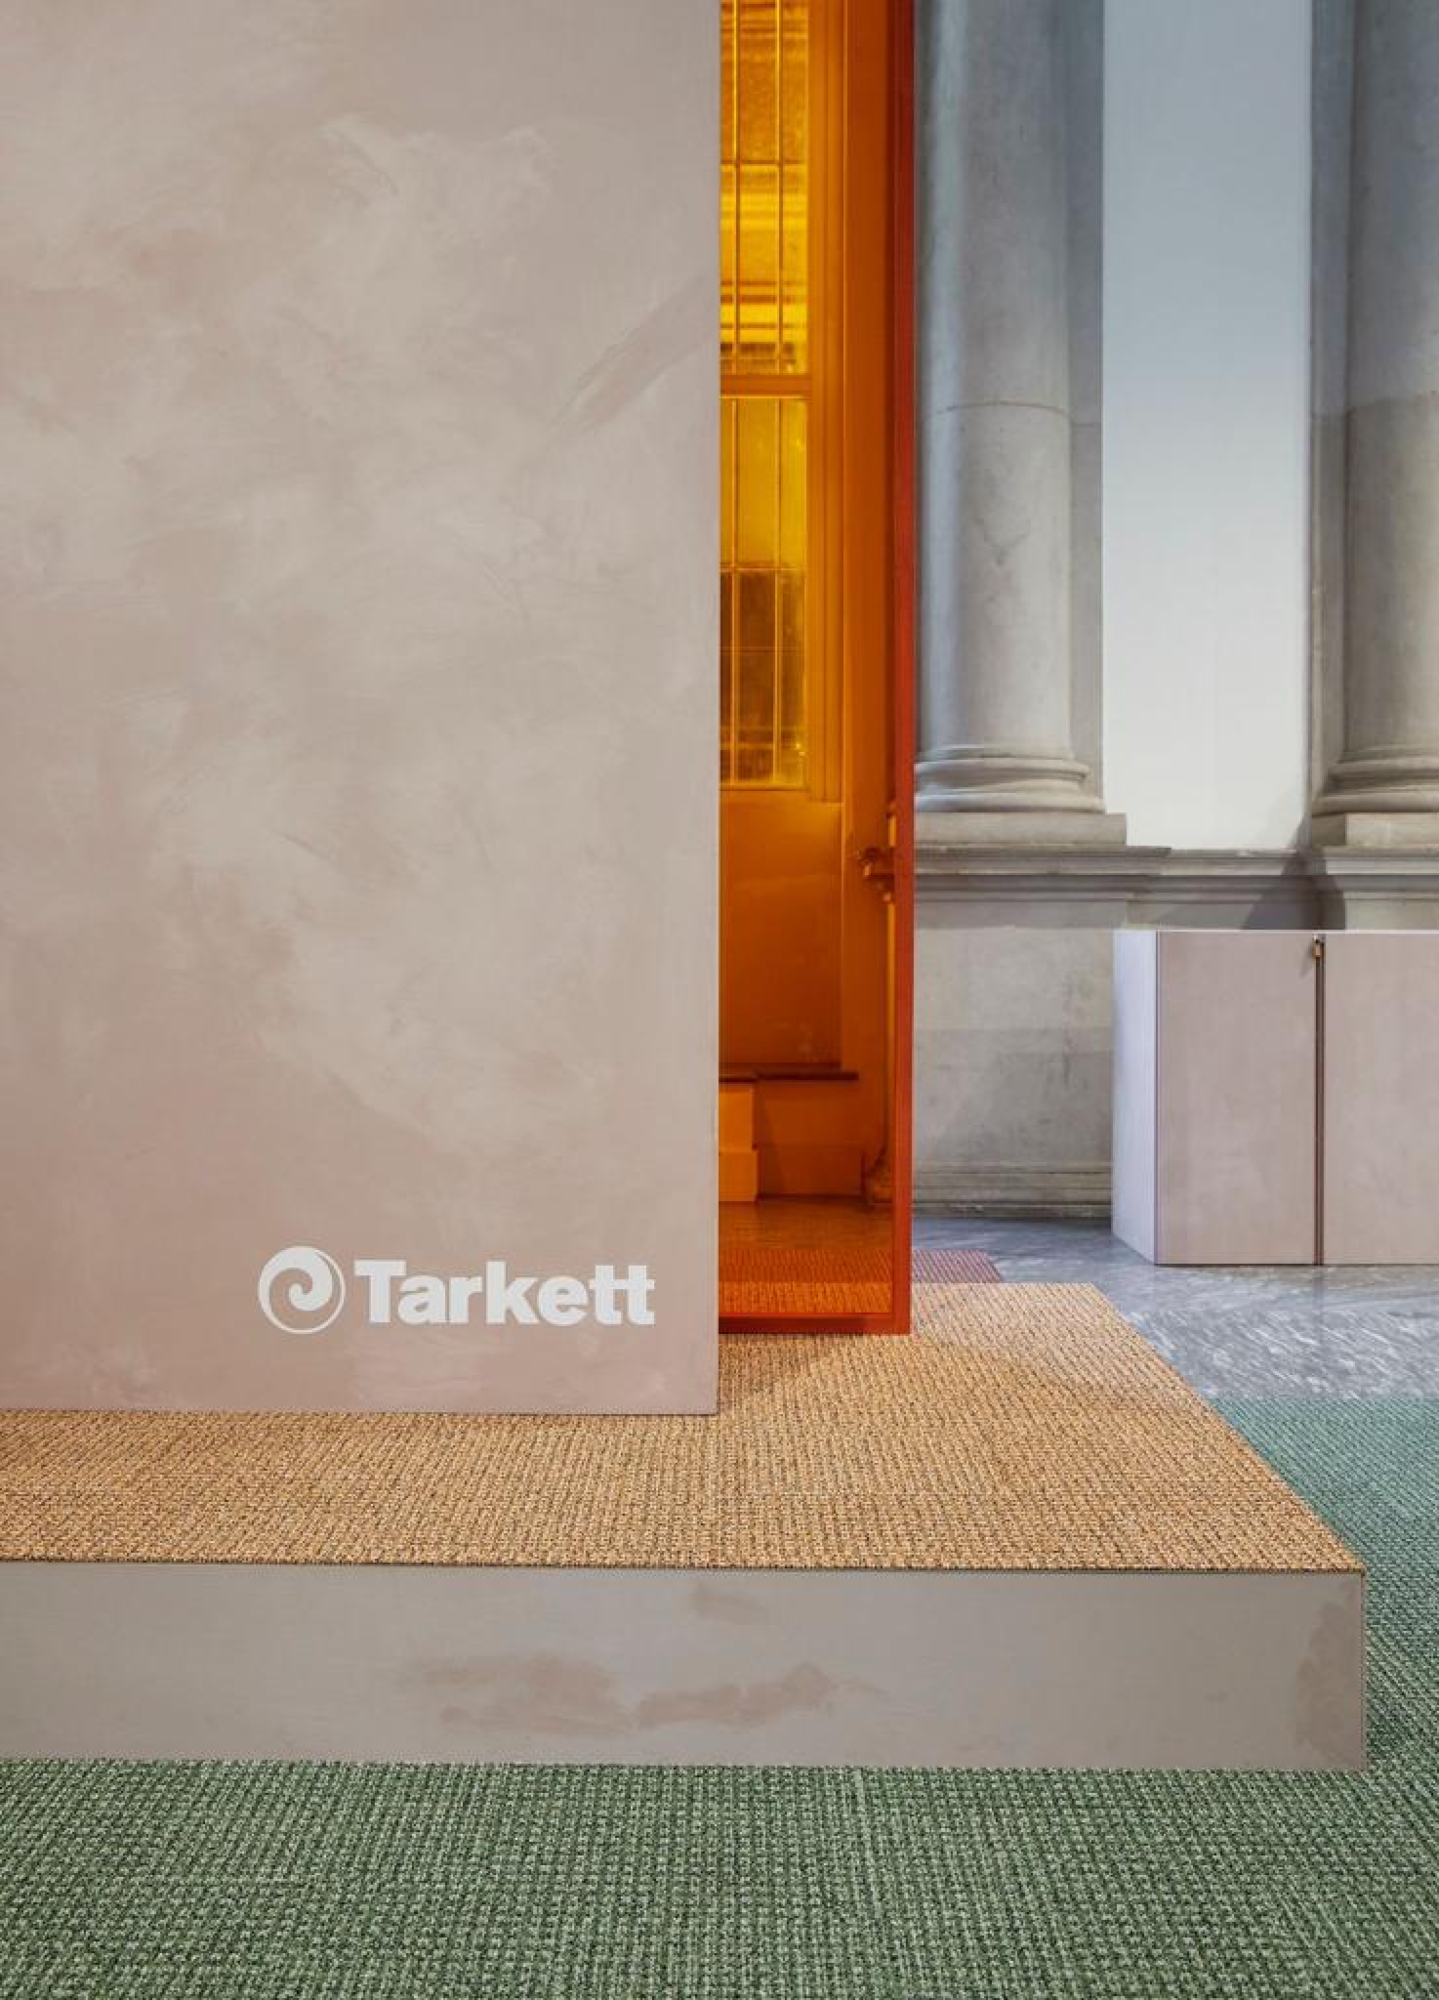 Tarkett presenteert de DESSO & Urquiola tapijttegelcollectie